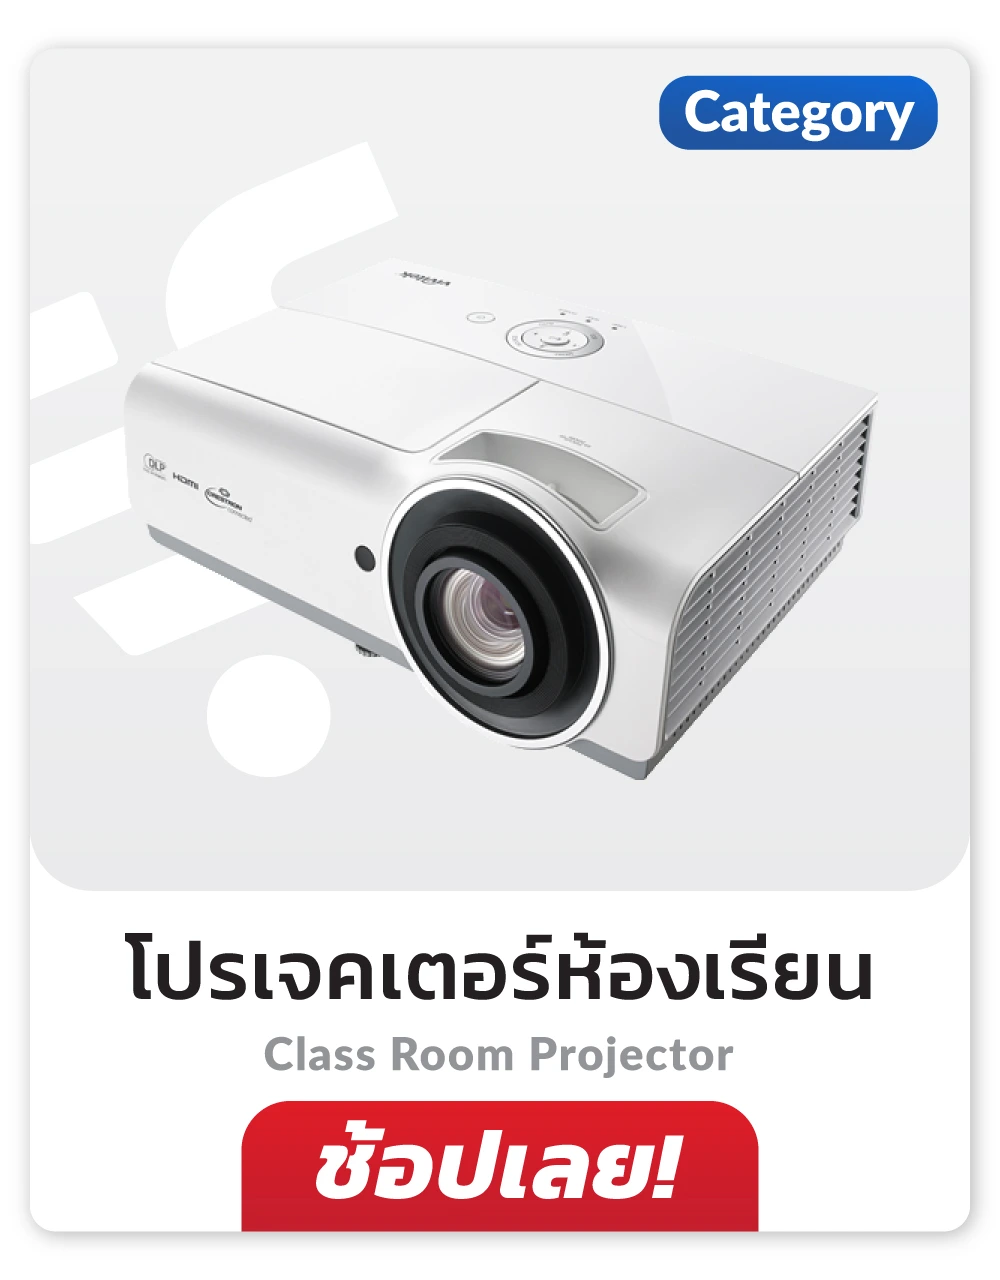 โปรเจคเตอร์ห้องเรียน Class Room Projector